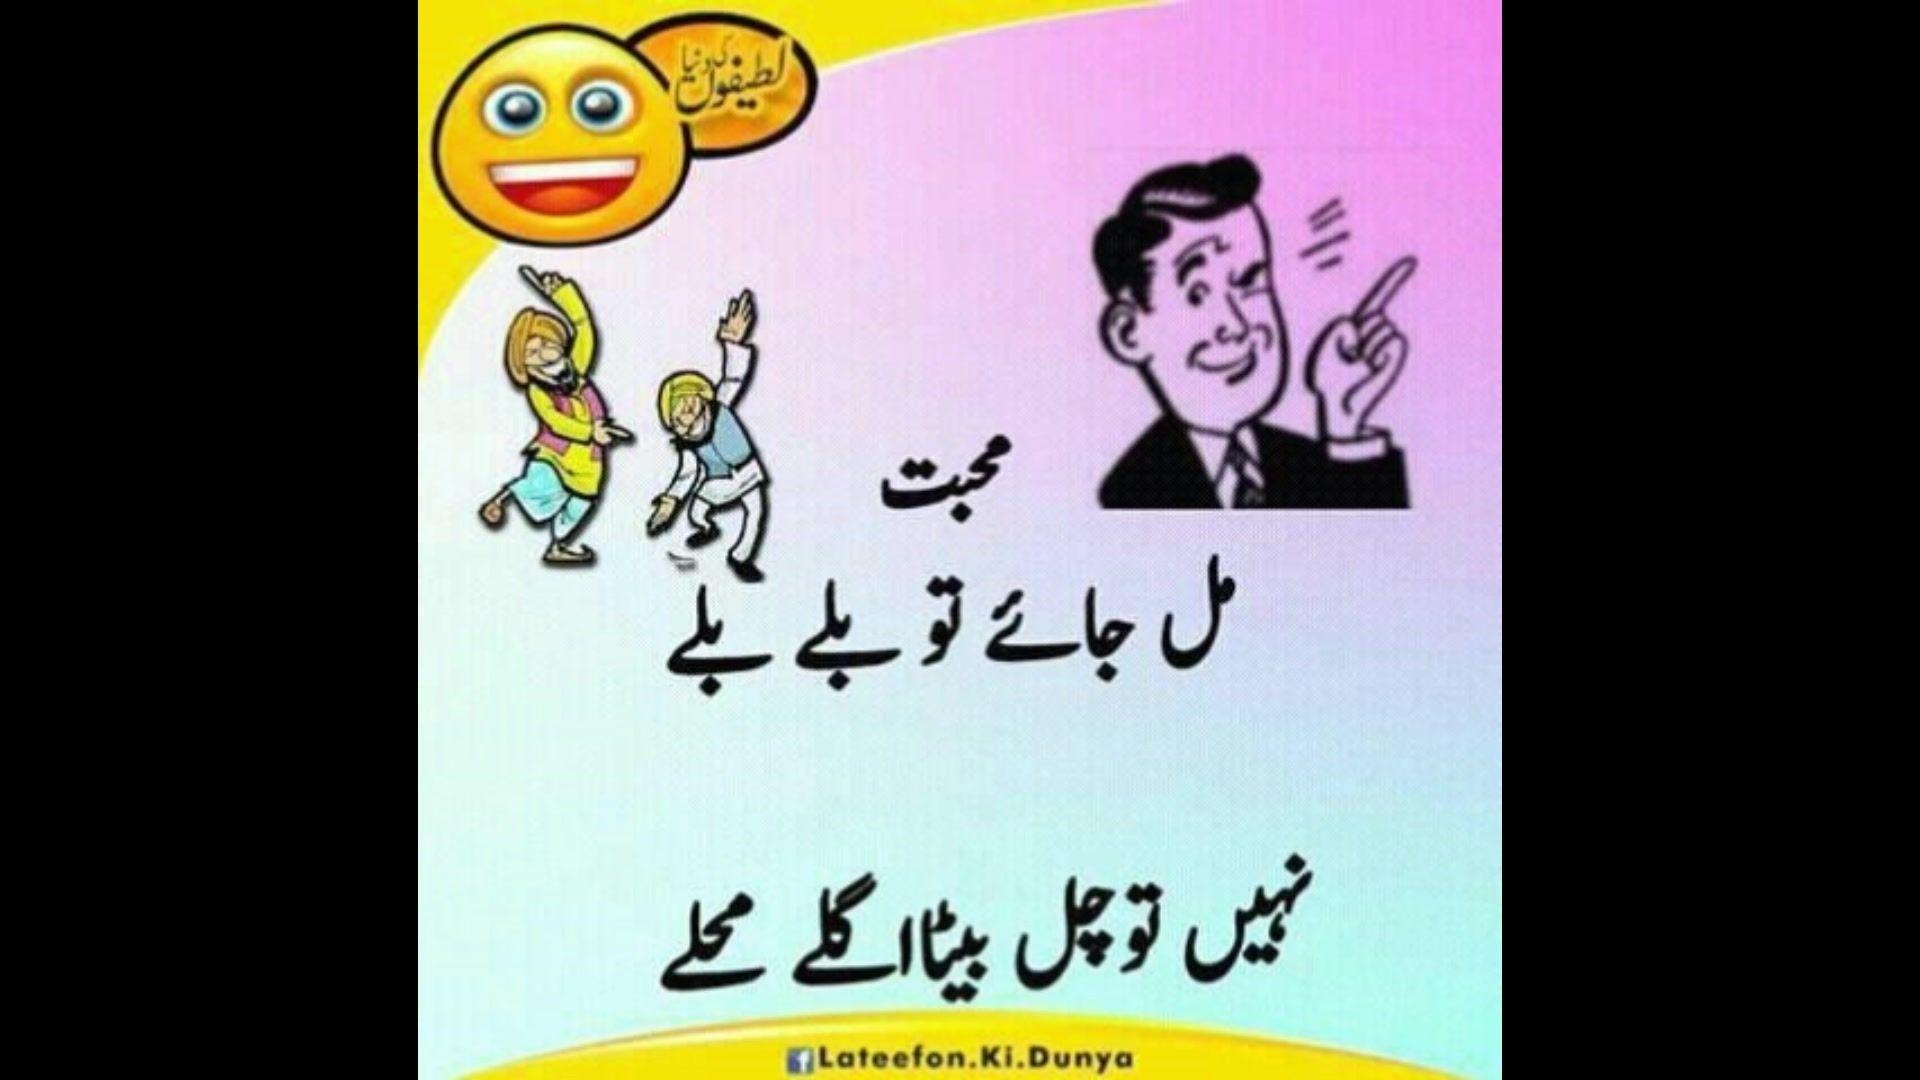 Funny Joke Wallpaper In Urdu. (30++ Wallpaper)